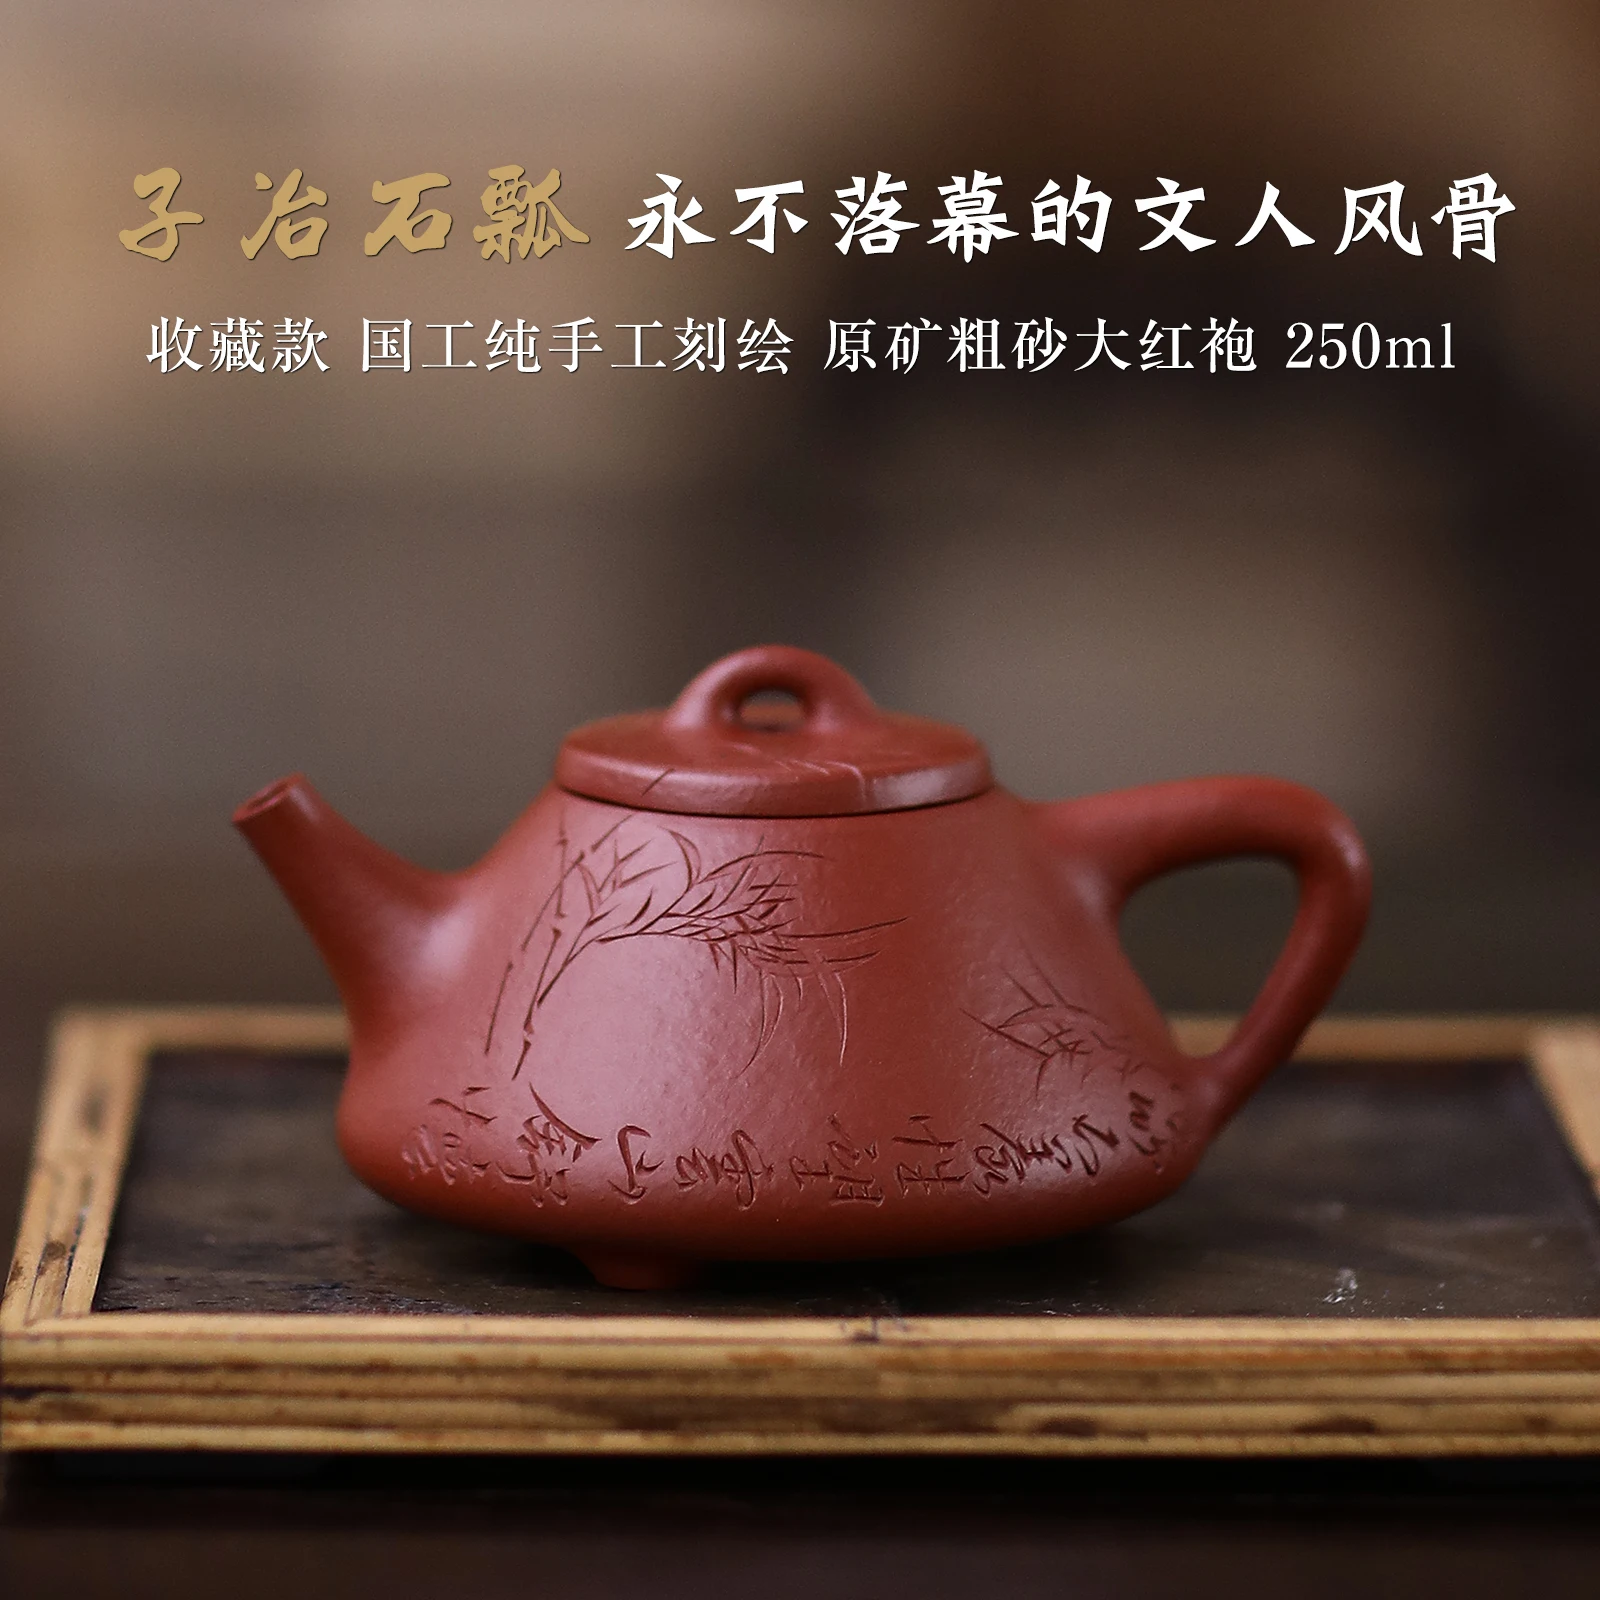 

Ручной чайник dahongpao из чистой потертой руды с грубым песком, инженерный горшок ji-biao zhang son stone gourd ladle